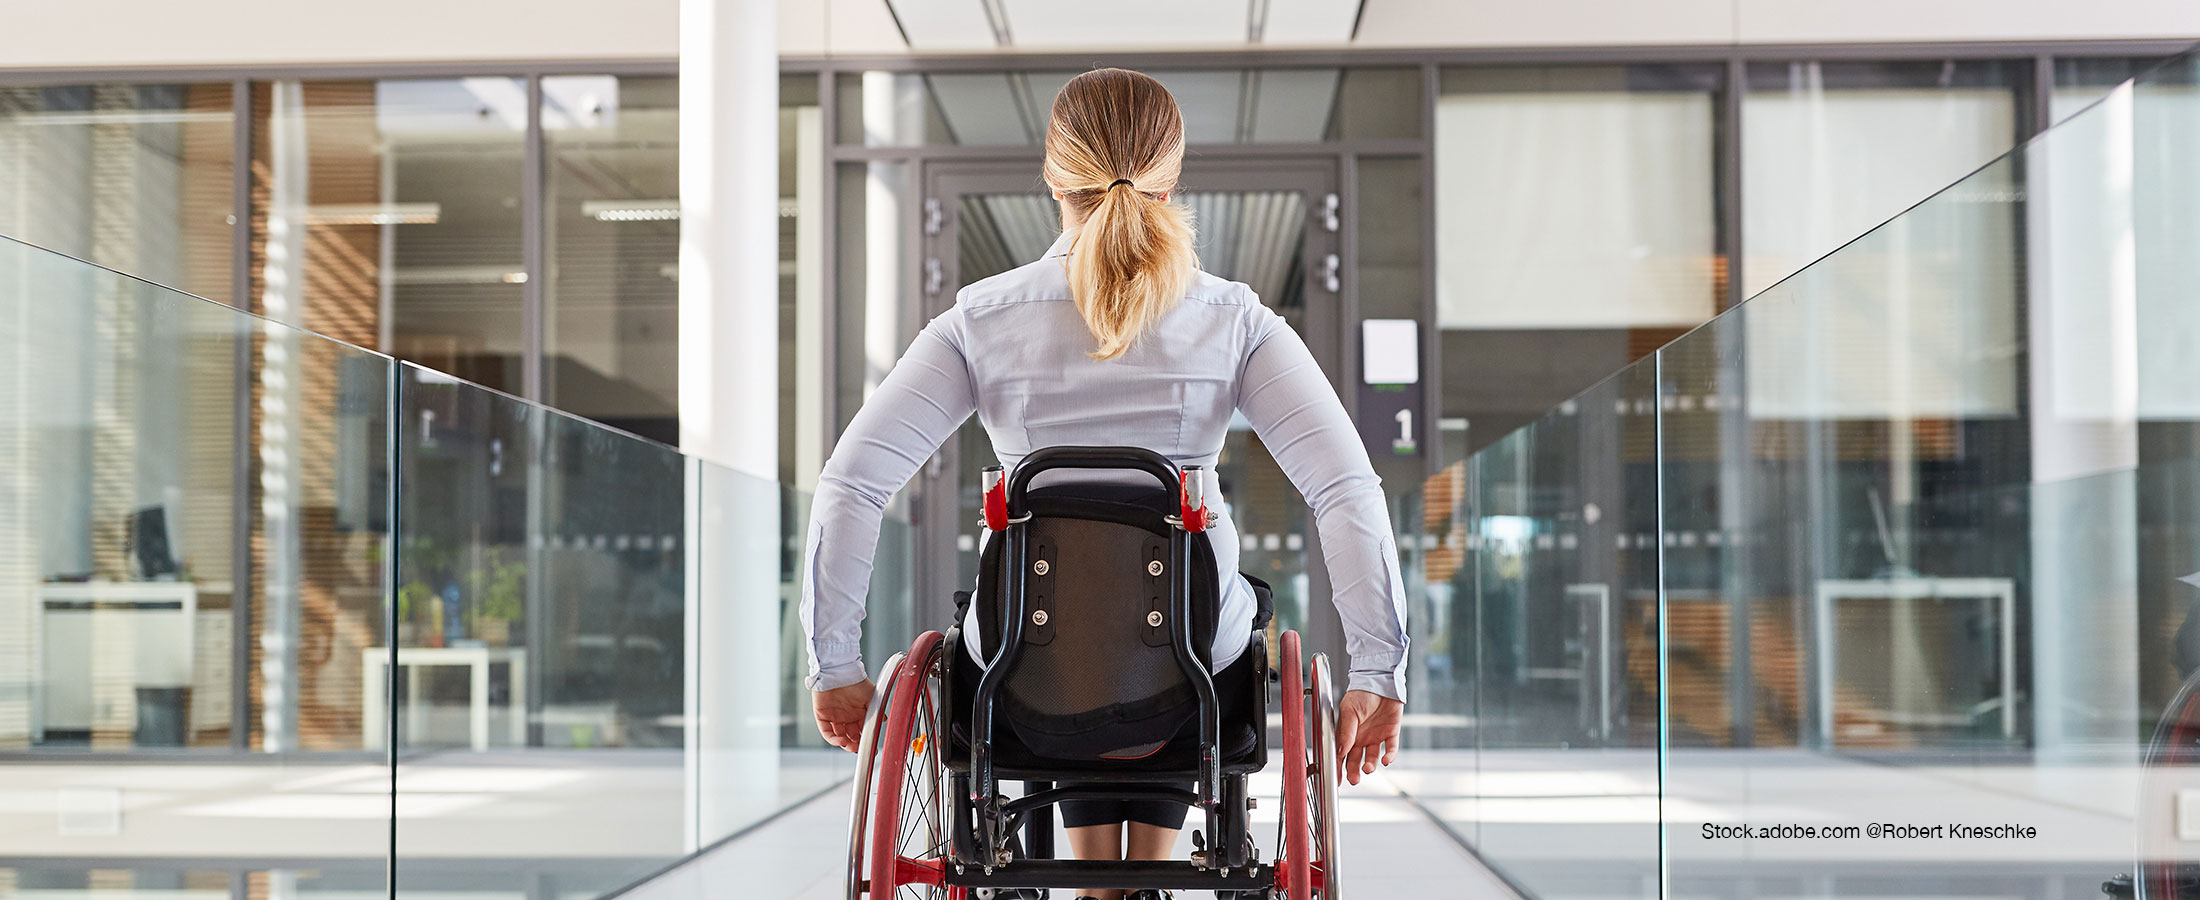 Arrivée d’un collaborateur handicapé  : quelles actions mettre en place ?